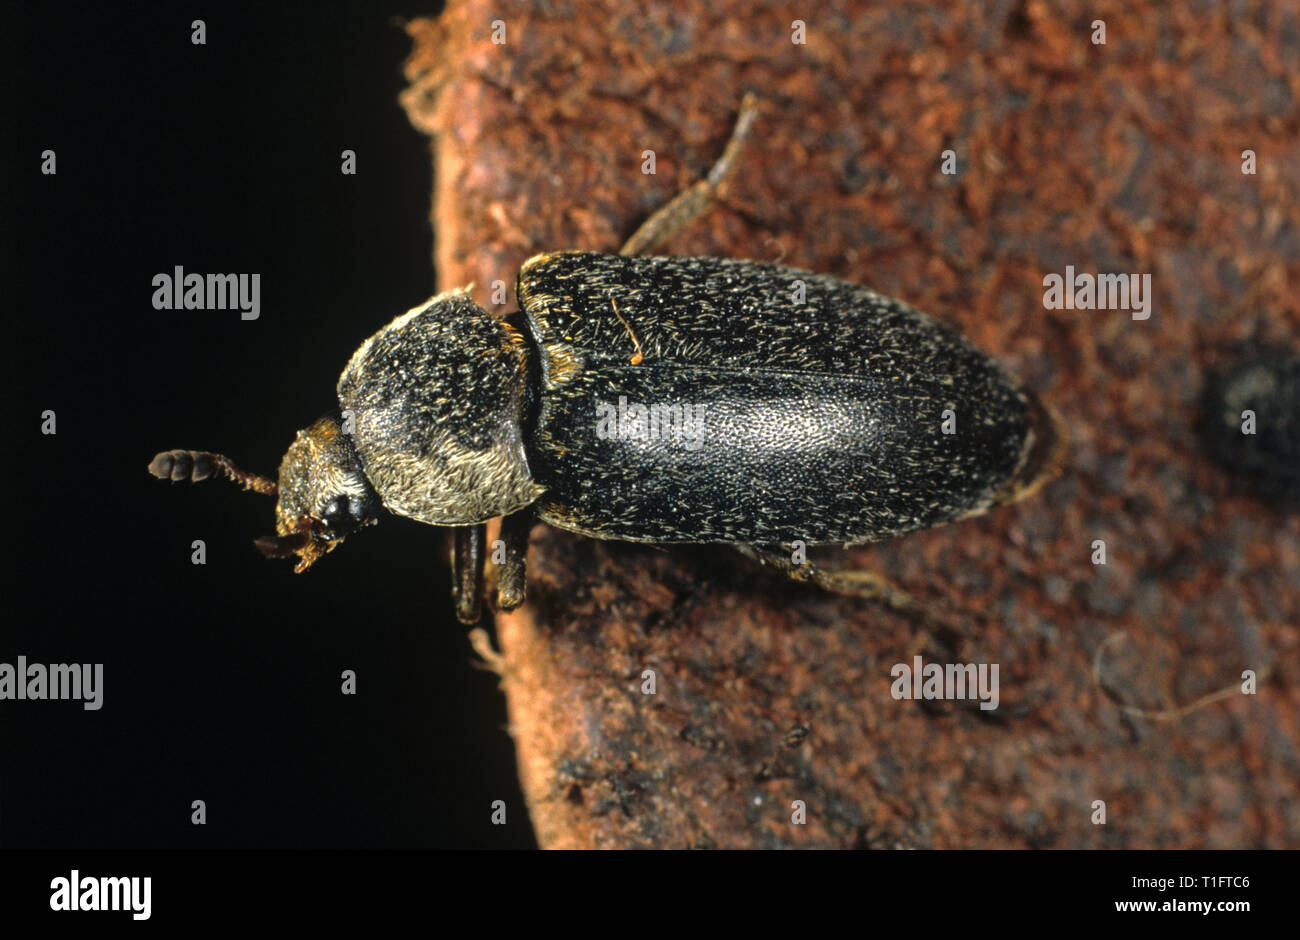 Masquer ou bacon beetle (Dermestes maculatus) des profils sur le cuir, se nourrit de charogne ou sèche produits animaux Banque D'Images